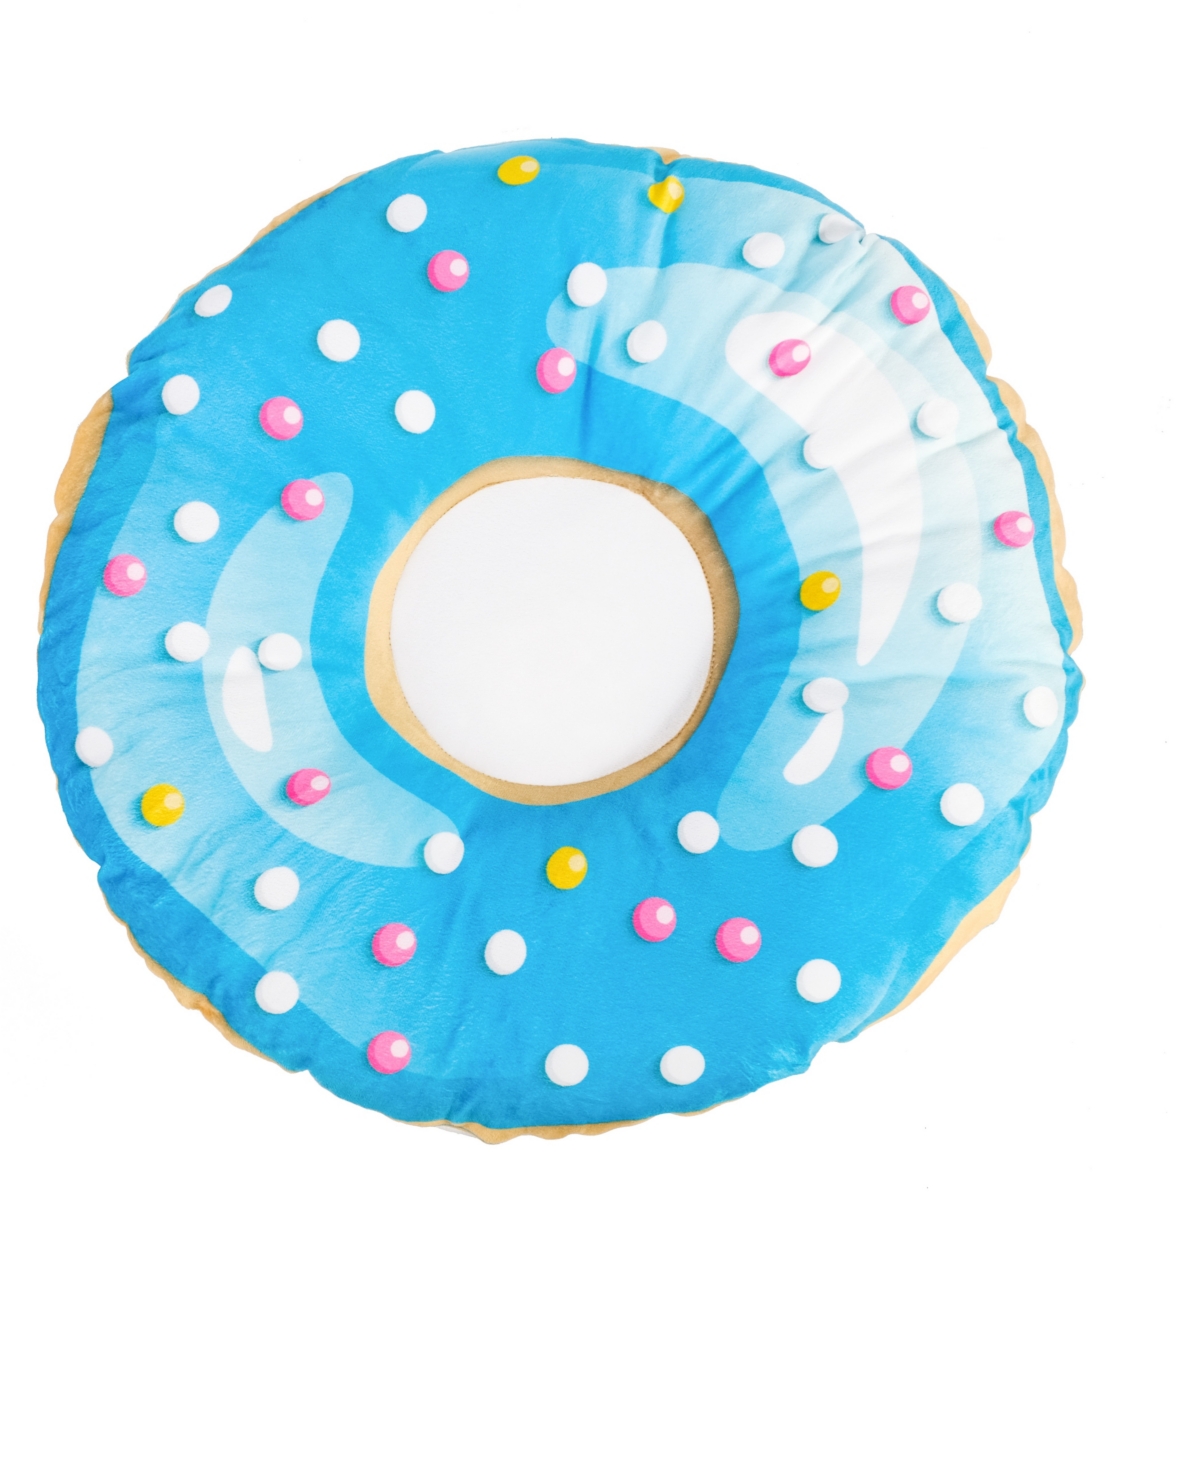 3D Print Donut Pet Bed, 35" - Sky Blue Dot Sprinkle